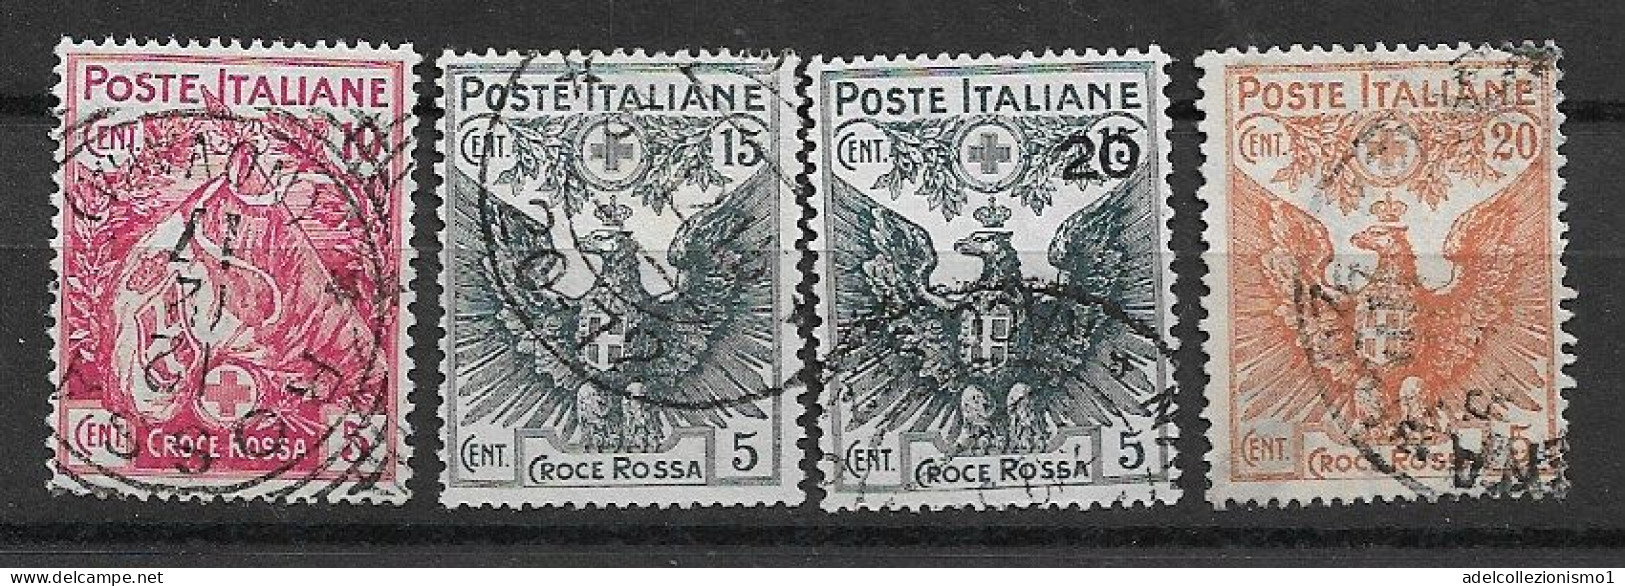 49549) Pro Croce Rossa - 1915/1916  -SERIE COMPLETA USATA - Reclame